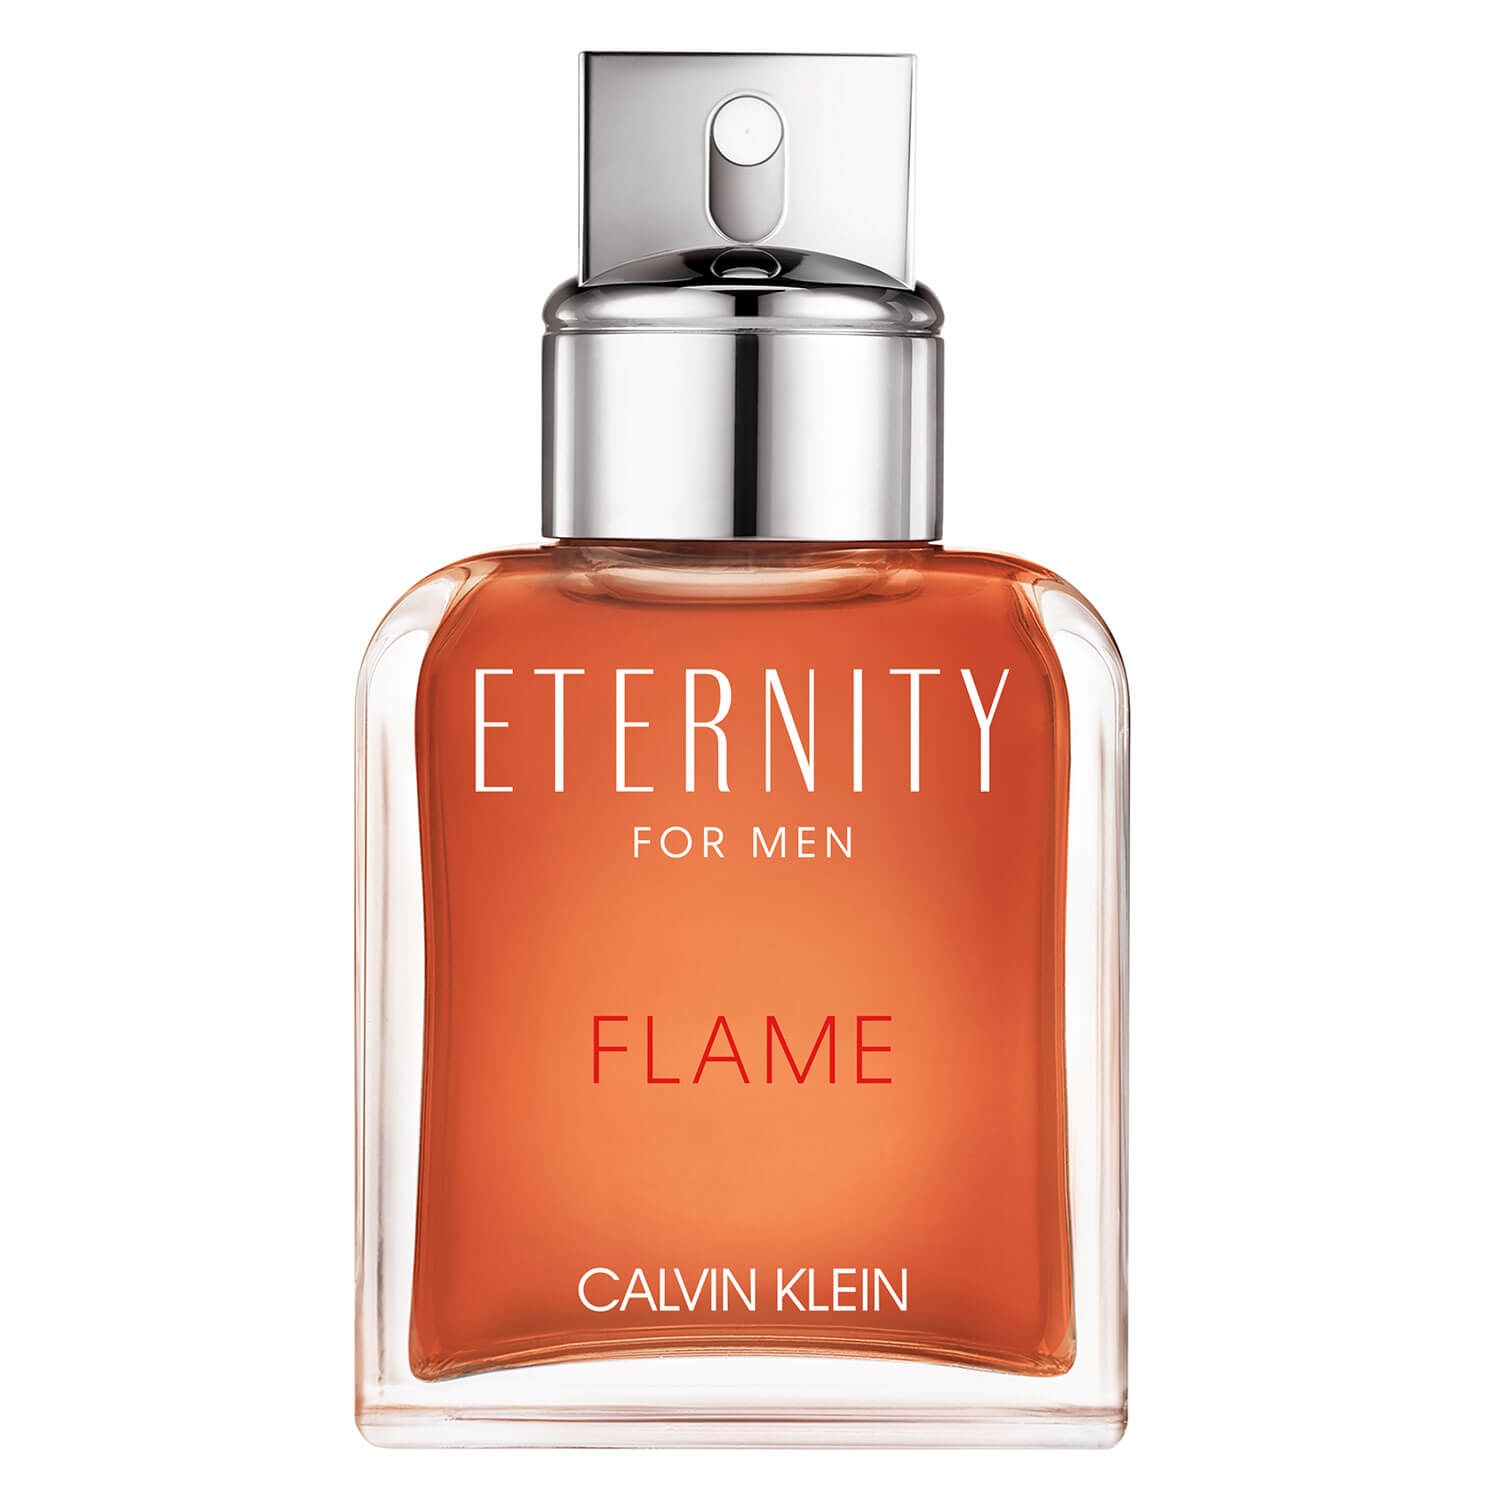 Produktbild von Eternity - For Men Flame Eau de Toilette